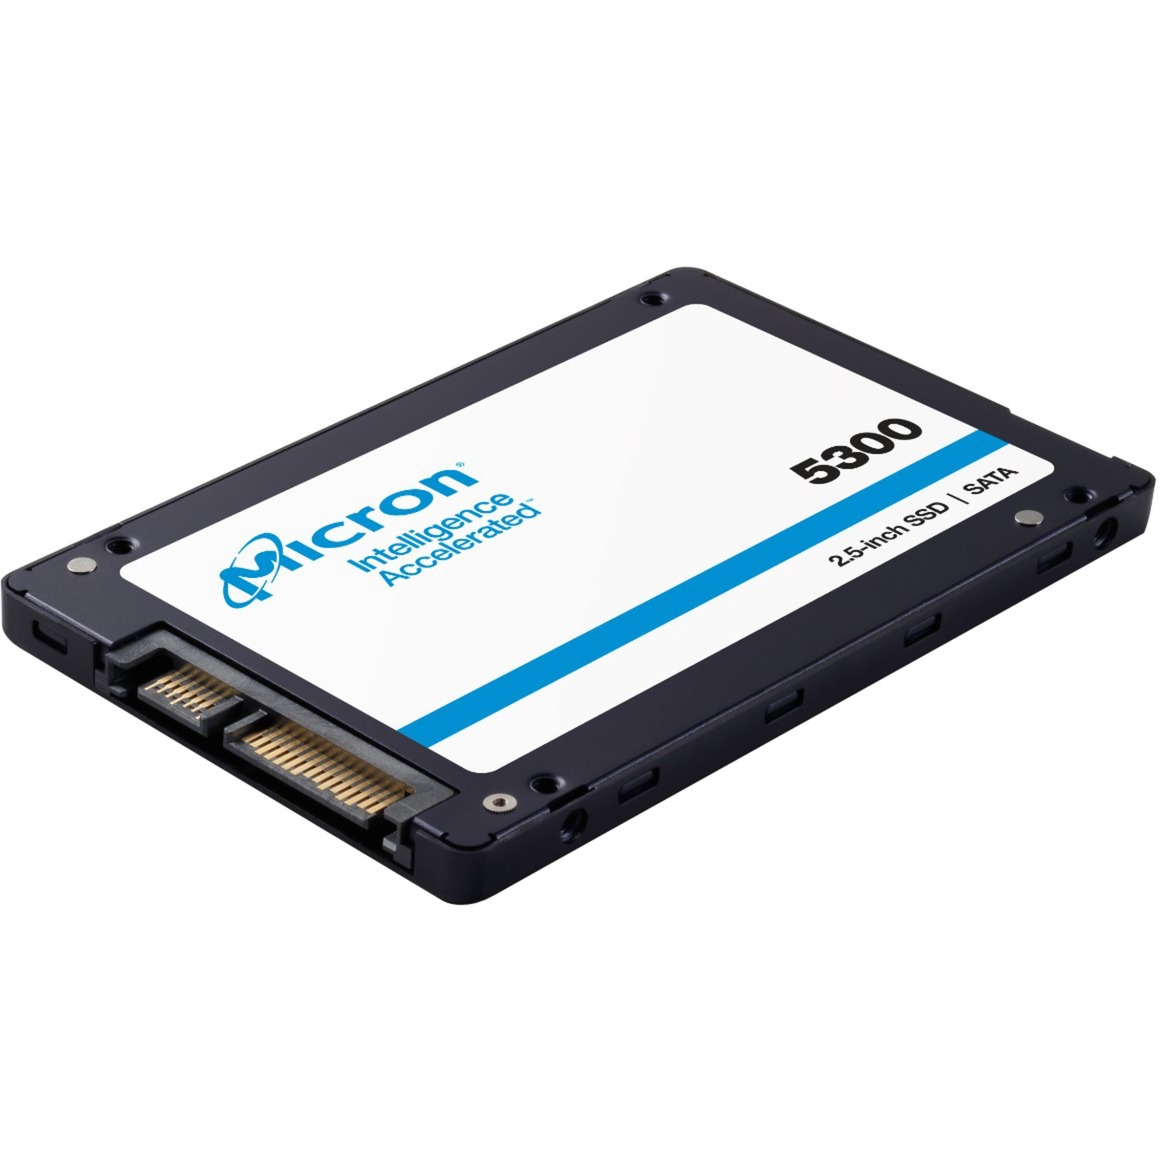 Image of Alternate - 5300 PRO 1,92 TB, SSD online einkaufen bei Alternate